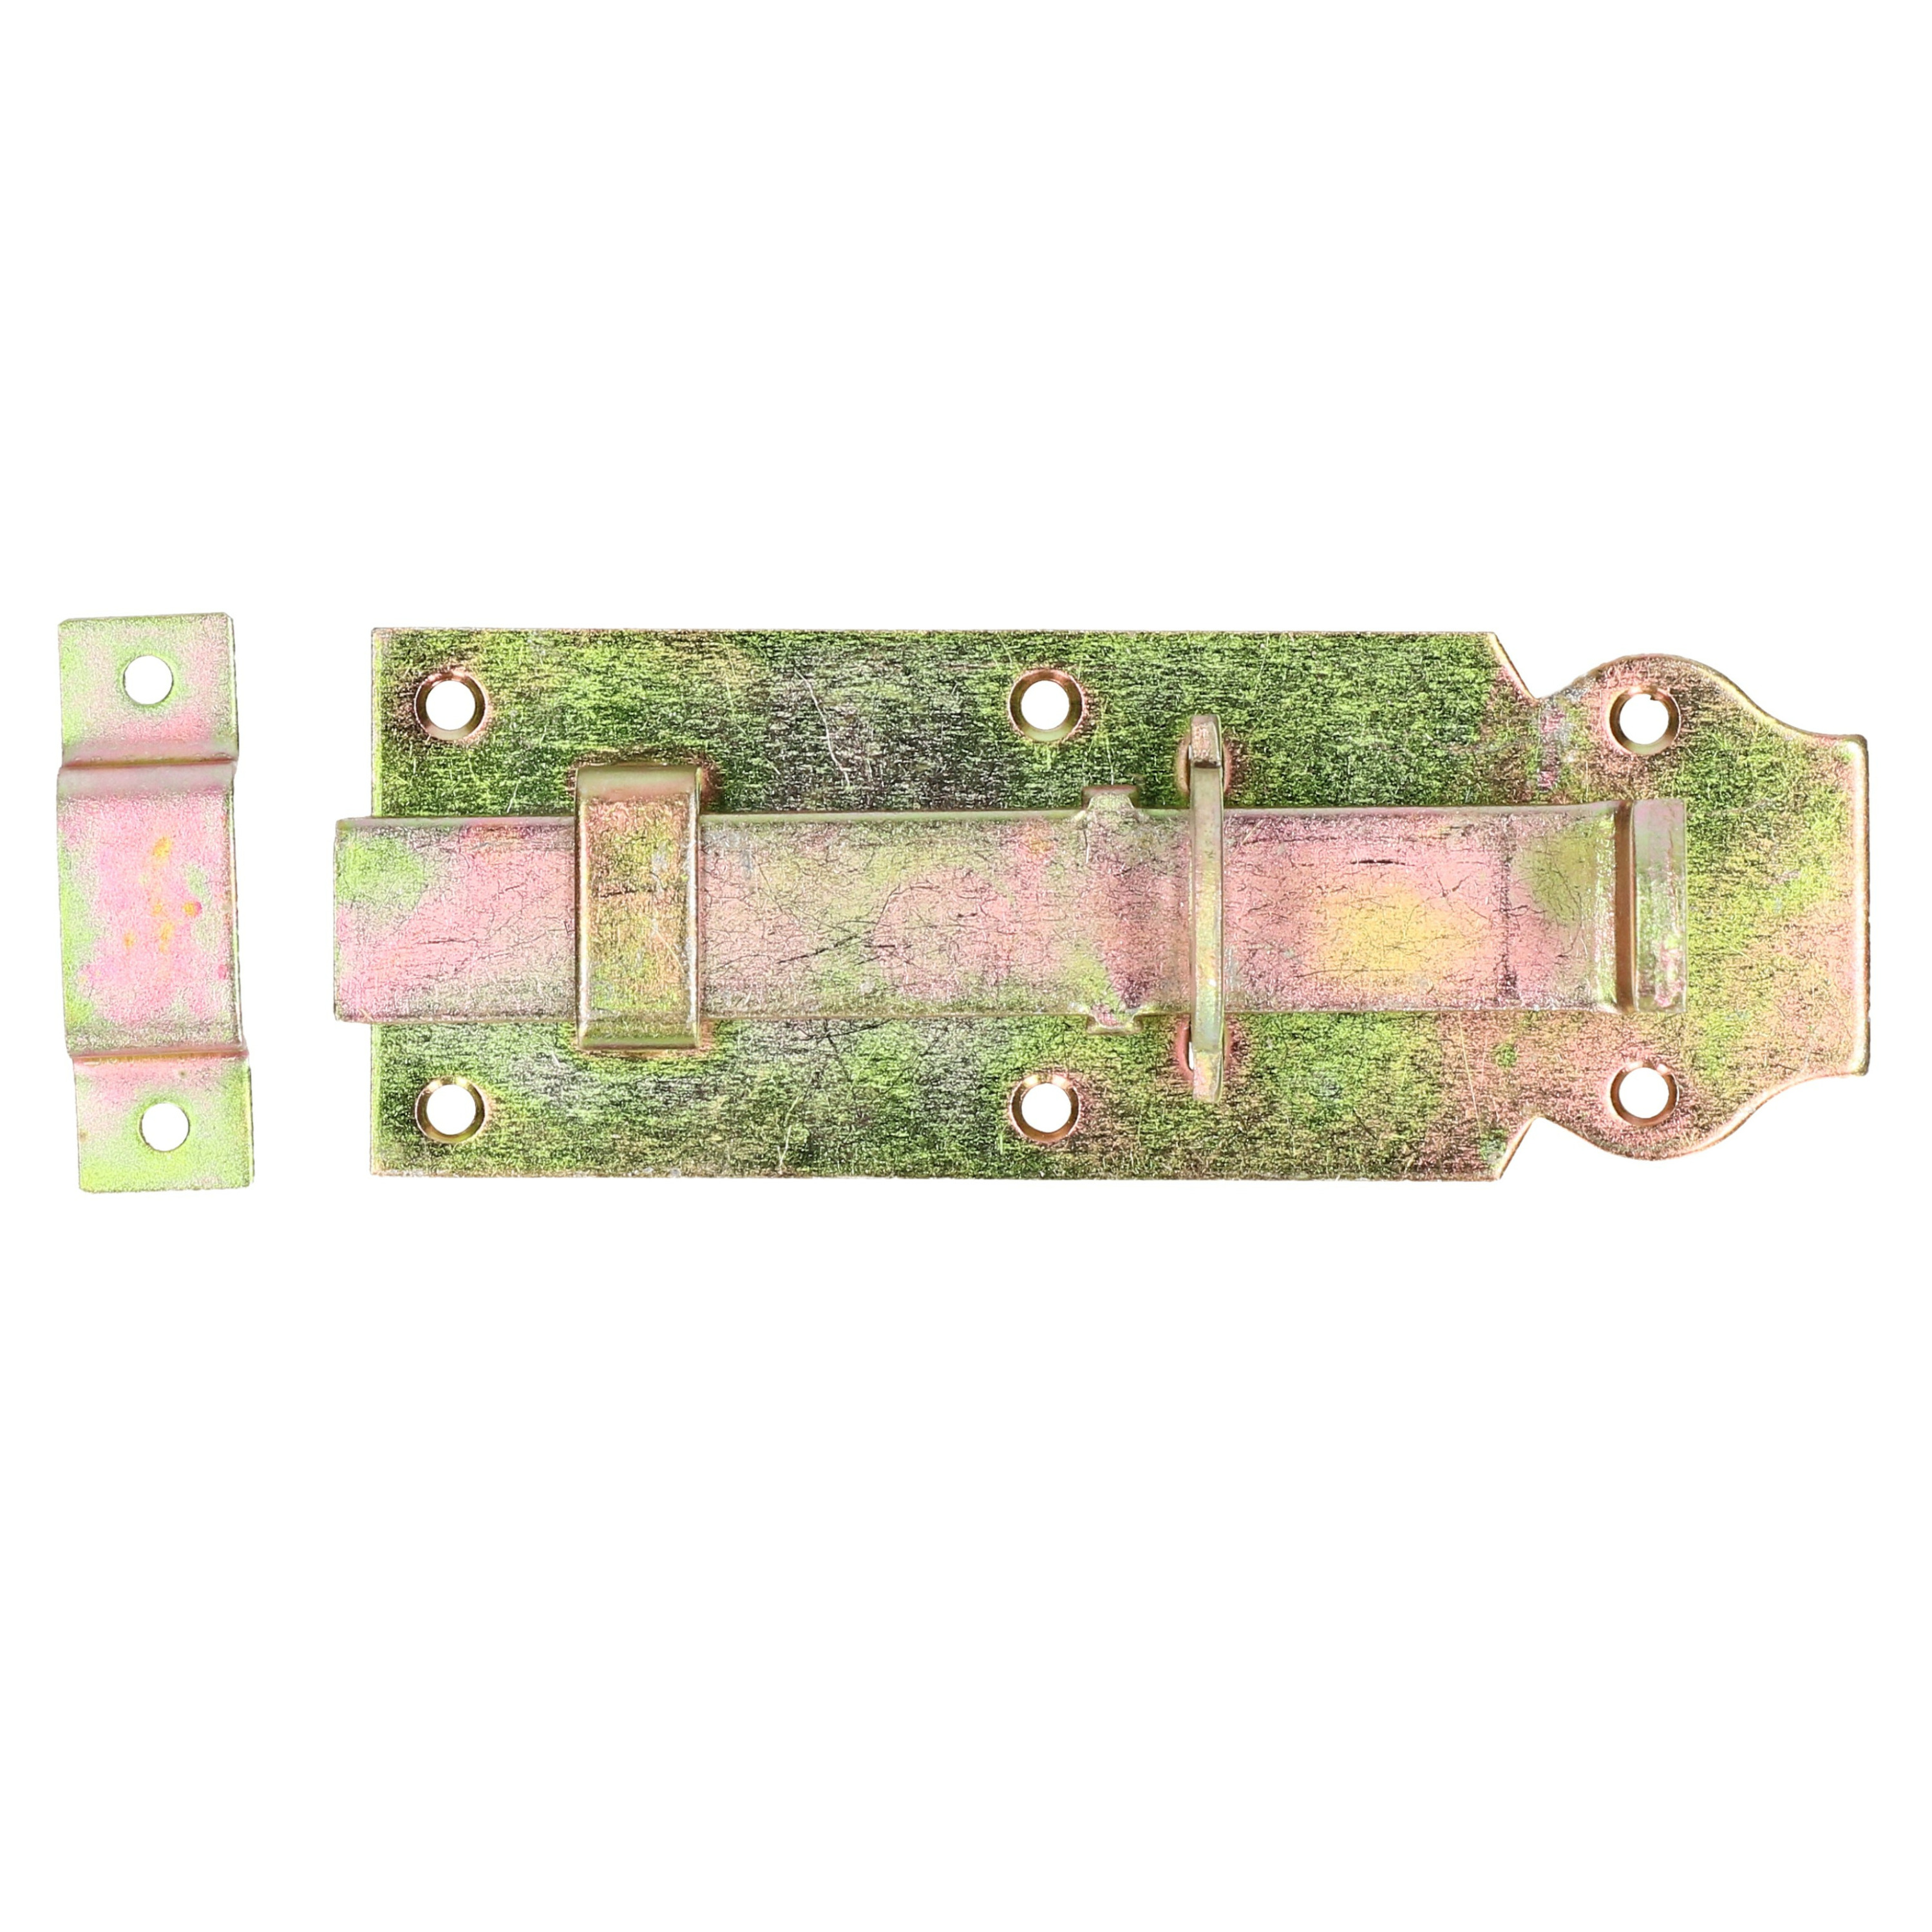 Deltafix schuifslot-hangslotschuif 1x 14 x 4.5cm geel verzinkt staal deur schutting hek